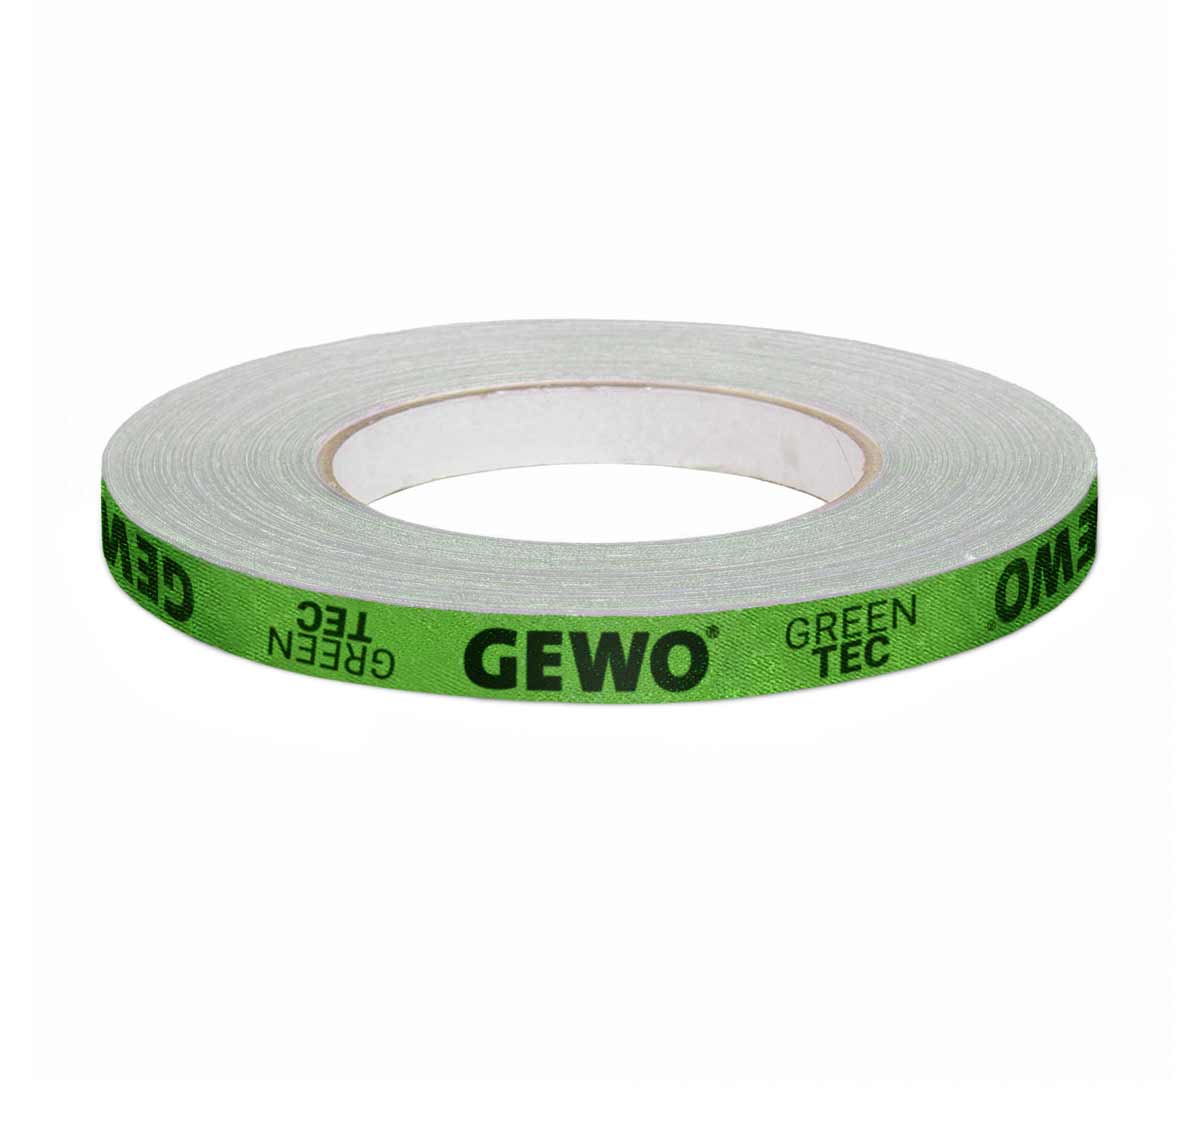 GEWO Kantenband Green-Tec12mm/50m grün/schwarz